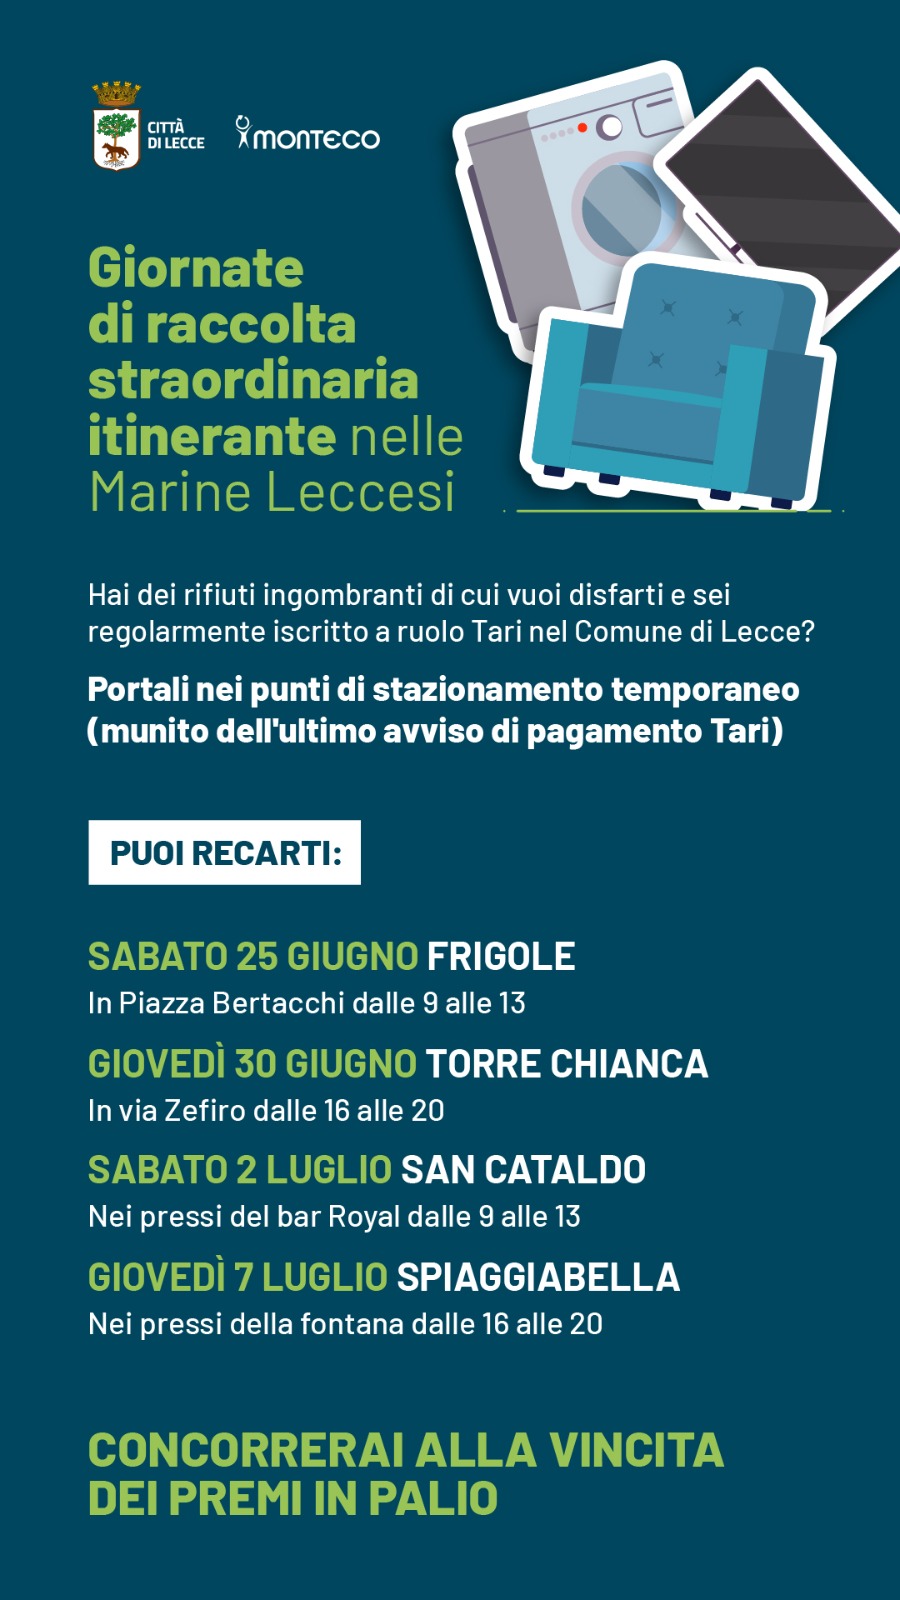 Lecce. Giornate di raccolta straordinaria dei rifiuti ingombranti nelle Marine, primo appuntamento a Frigole sabato 25 giugno 2022